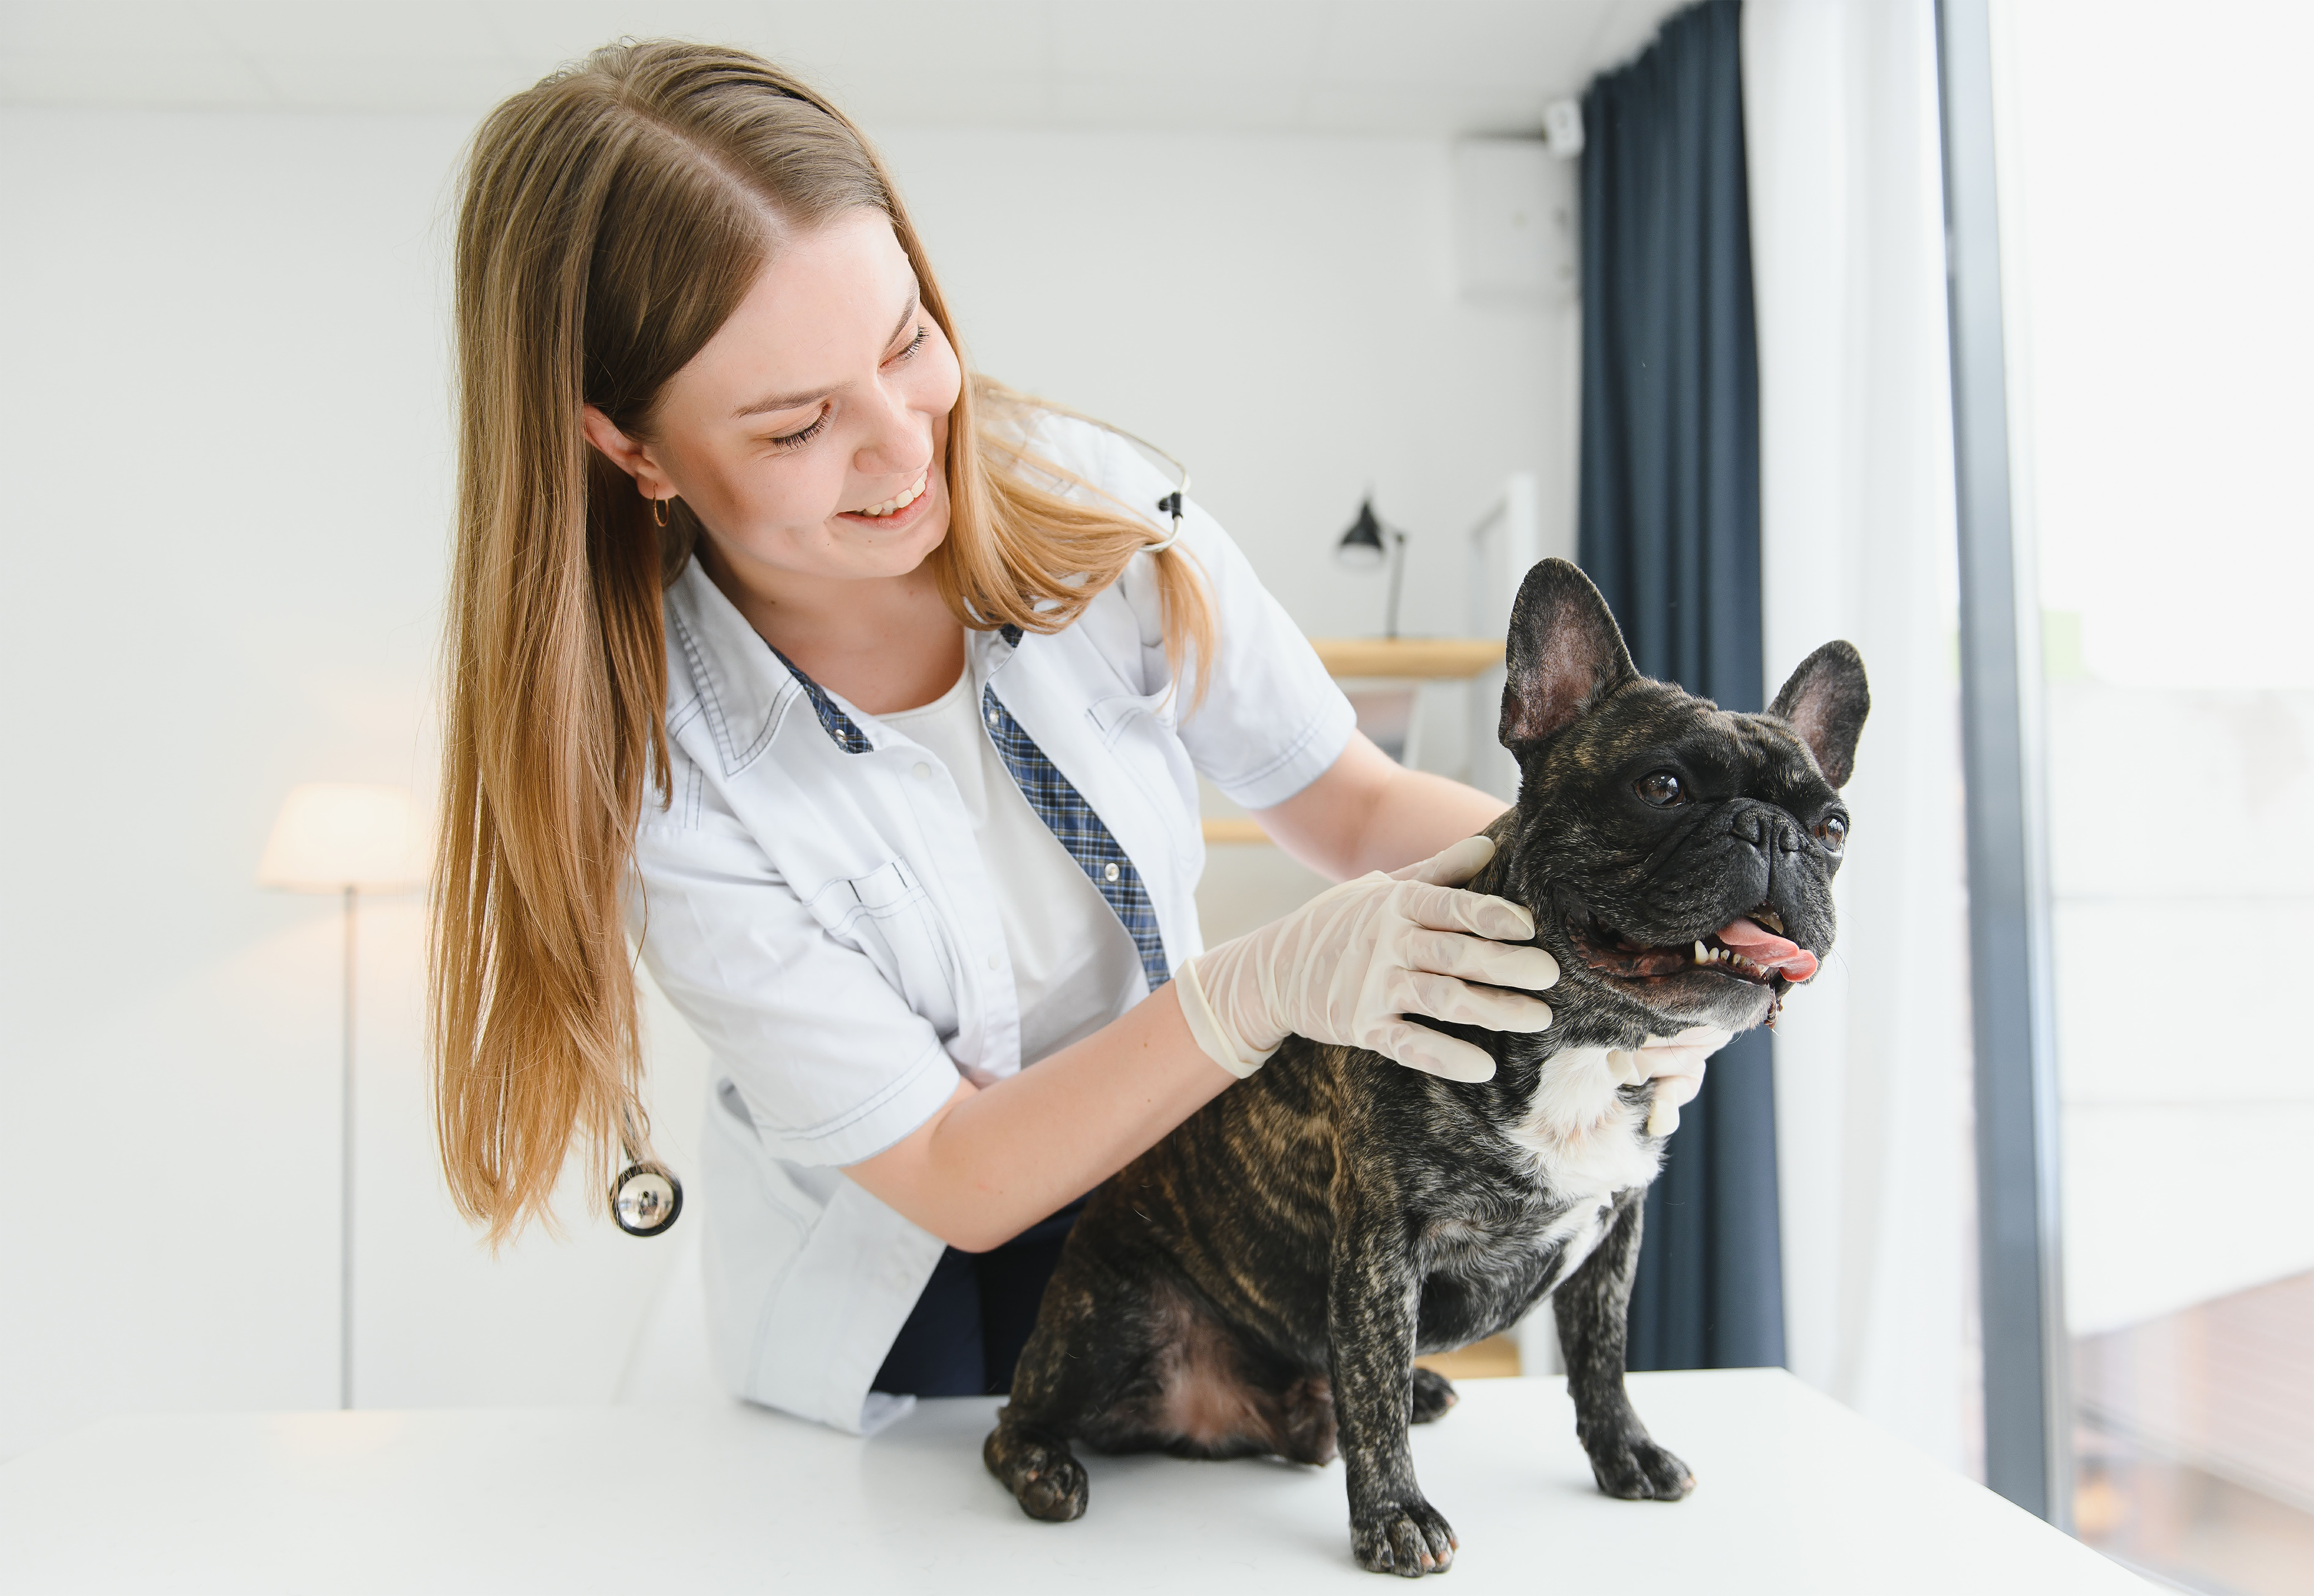 Auxiliar técnico veterinaria en consulta